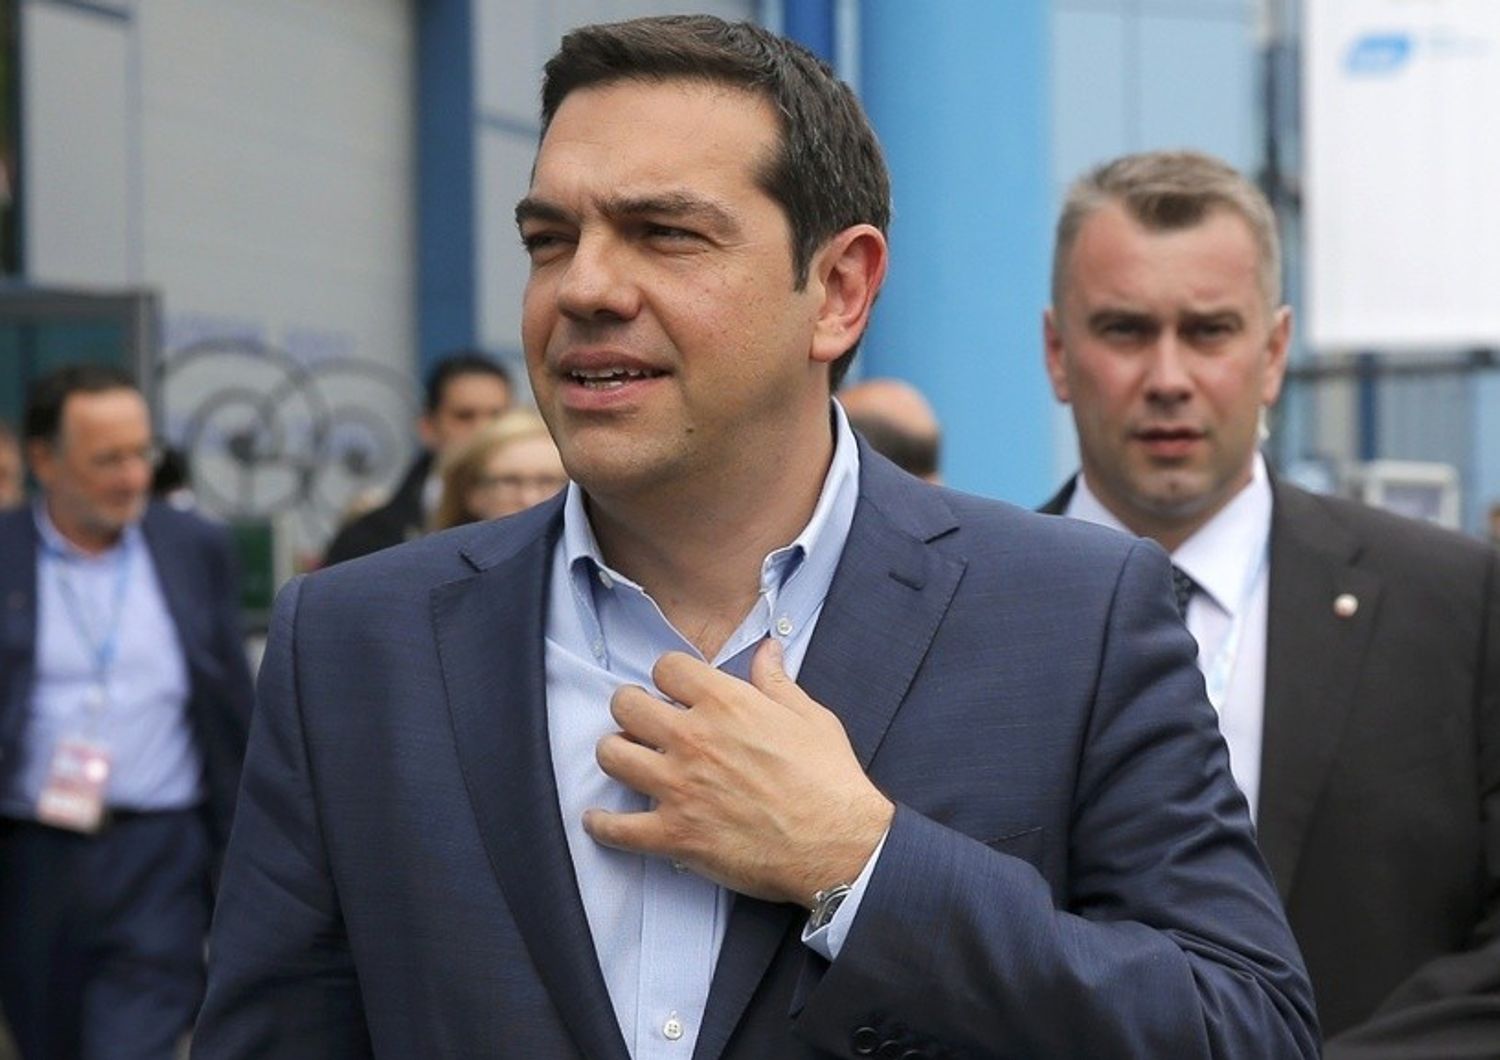 Grecia, no intesa in Eurogruppo Tsipras, lunedi' ci sara' soluzione